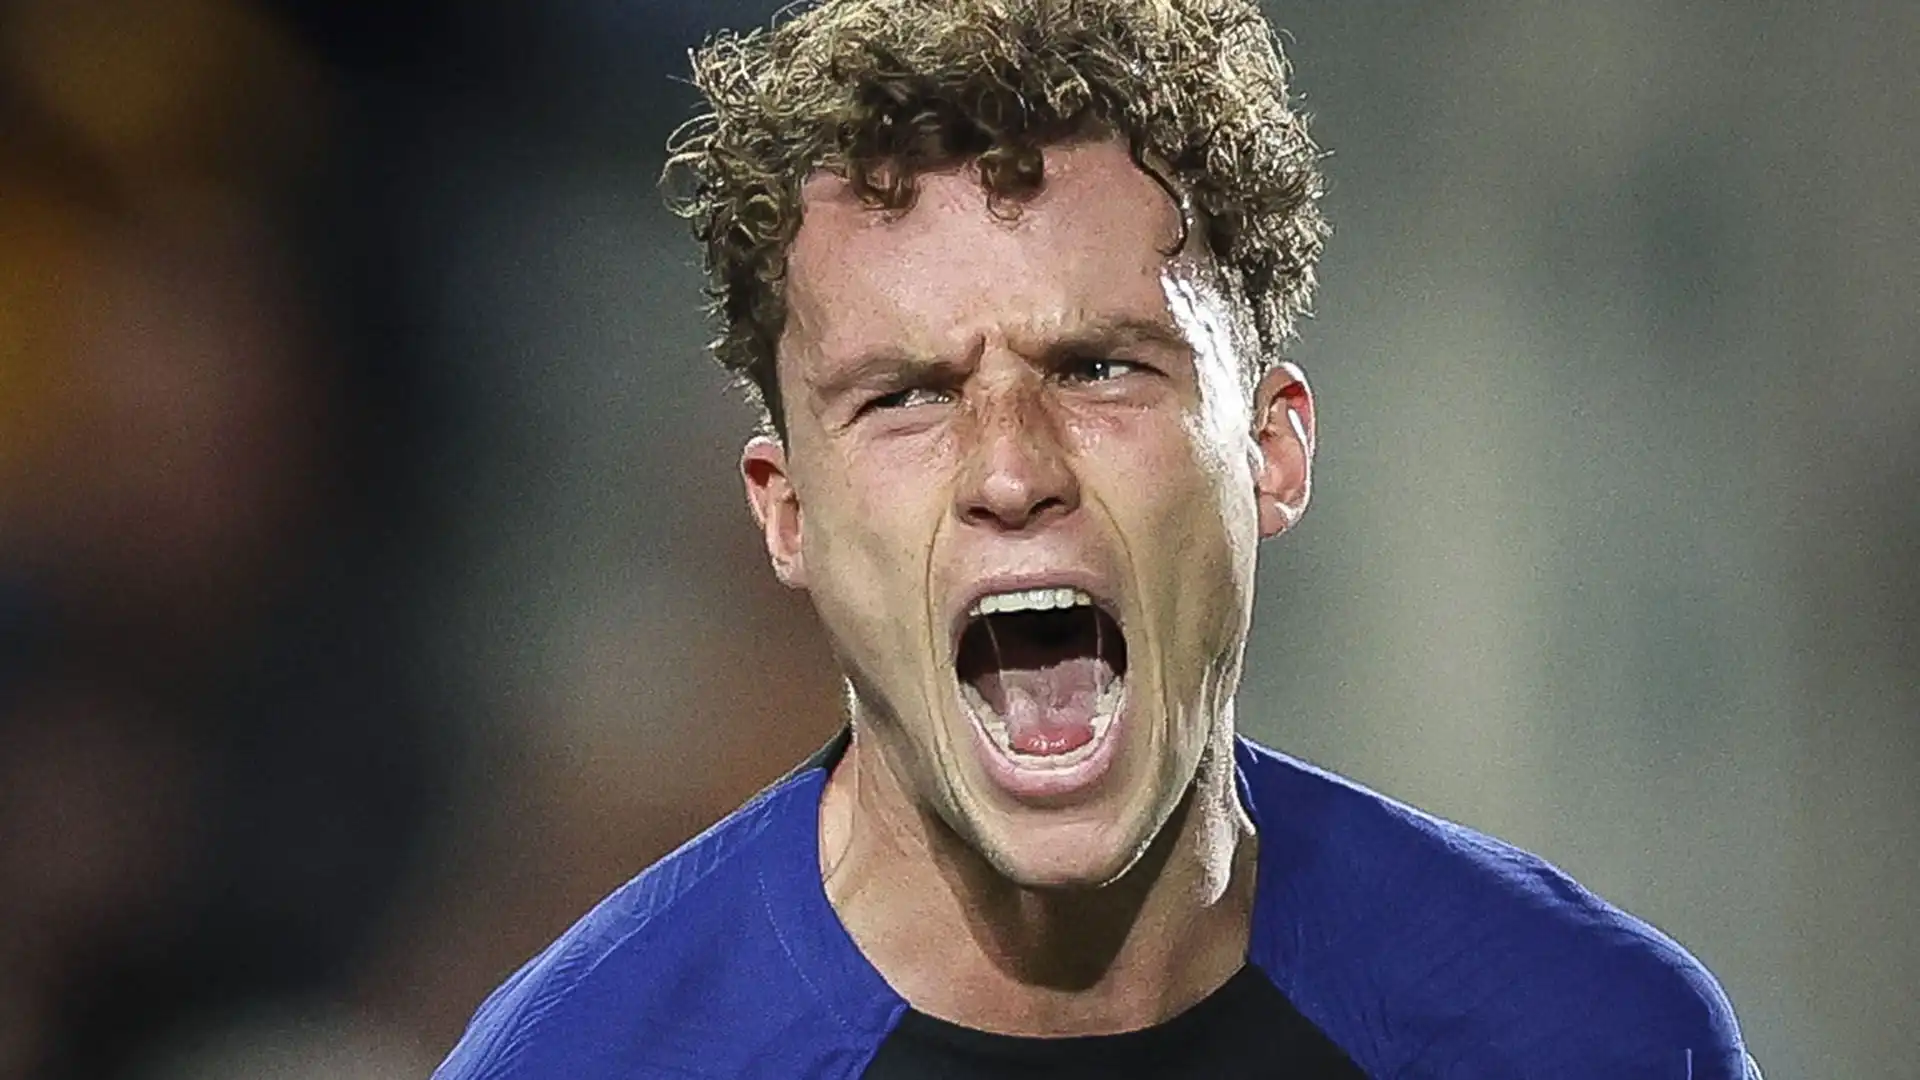 Wieffer è cresciuto calcisticamente nel Twente, ed ha giocato anche con la maglia dell'Excelsior